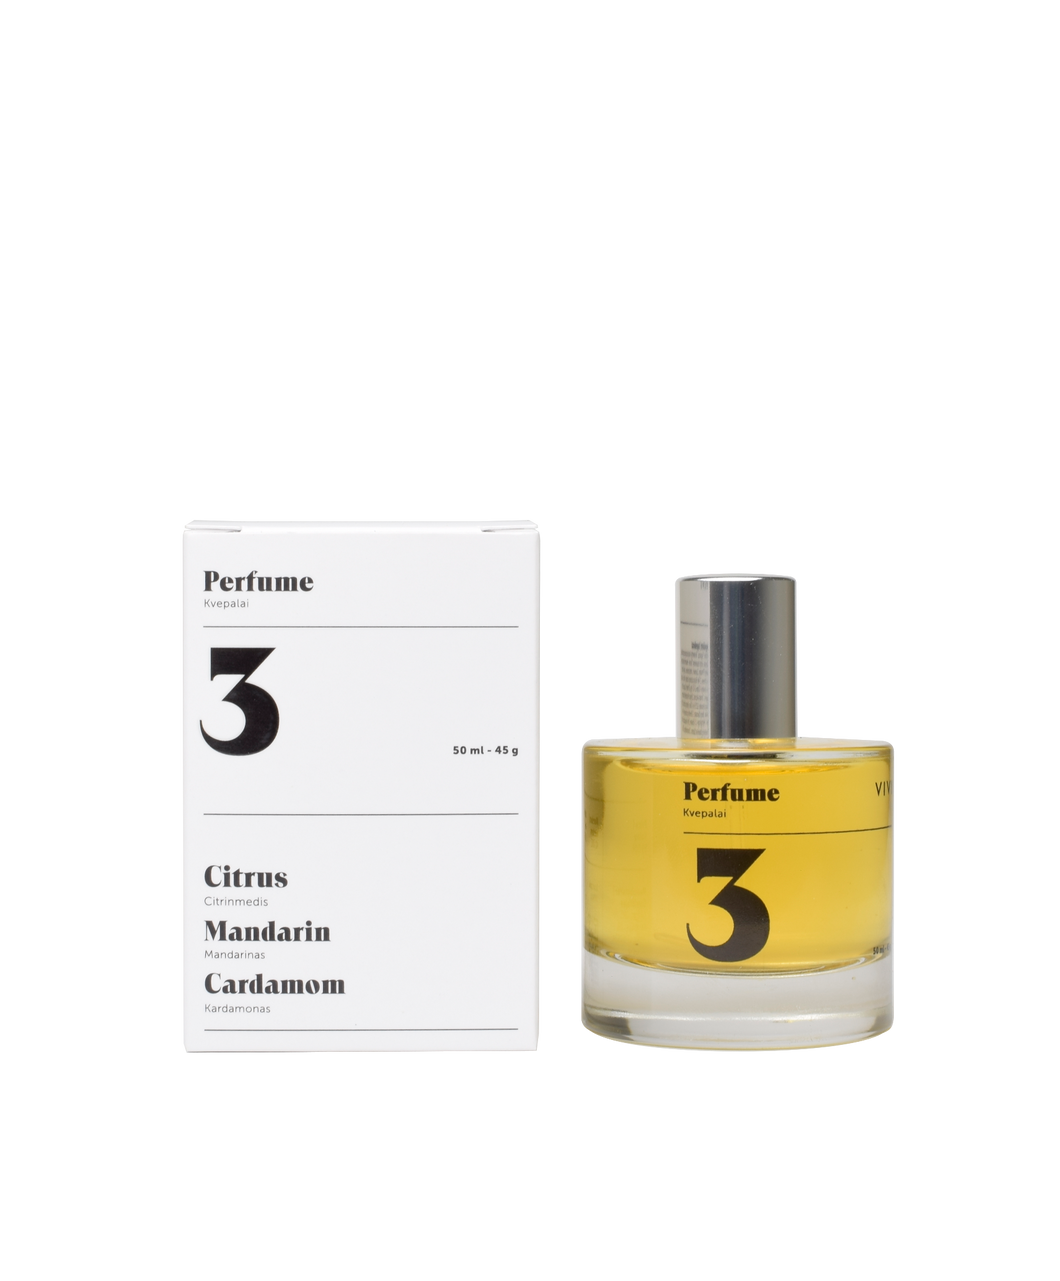 Perfume No. 3 Radiant harmony